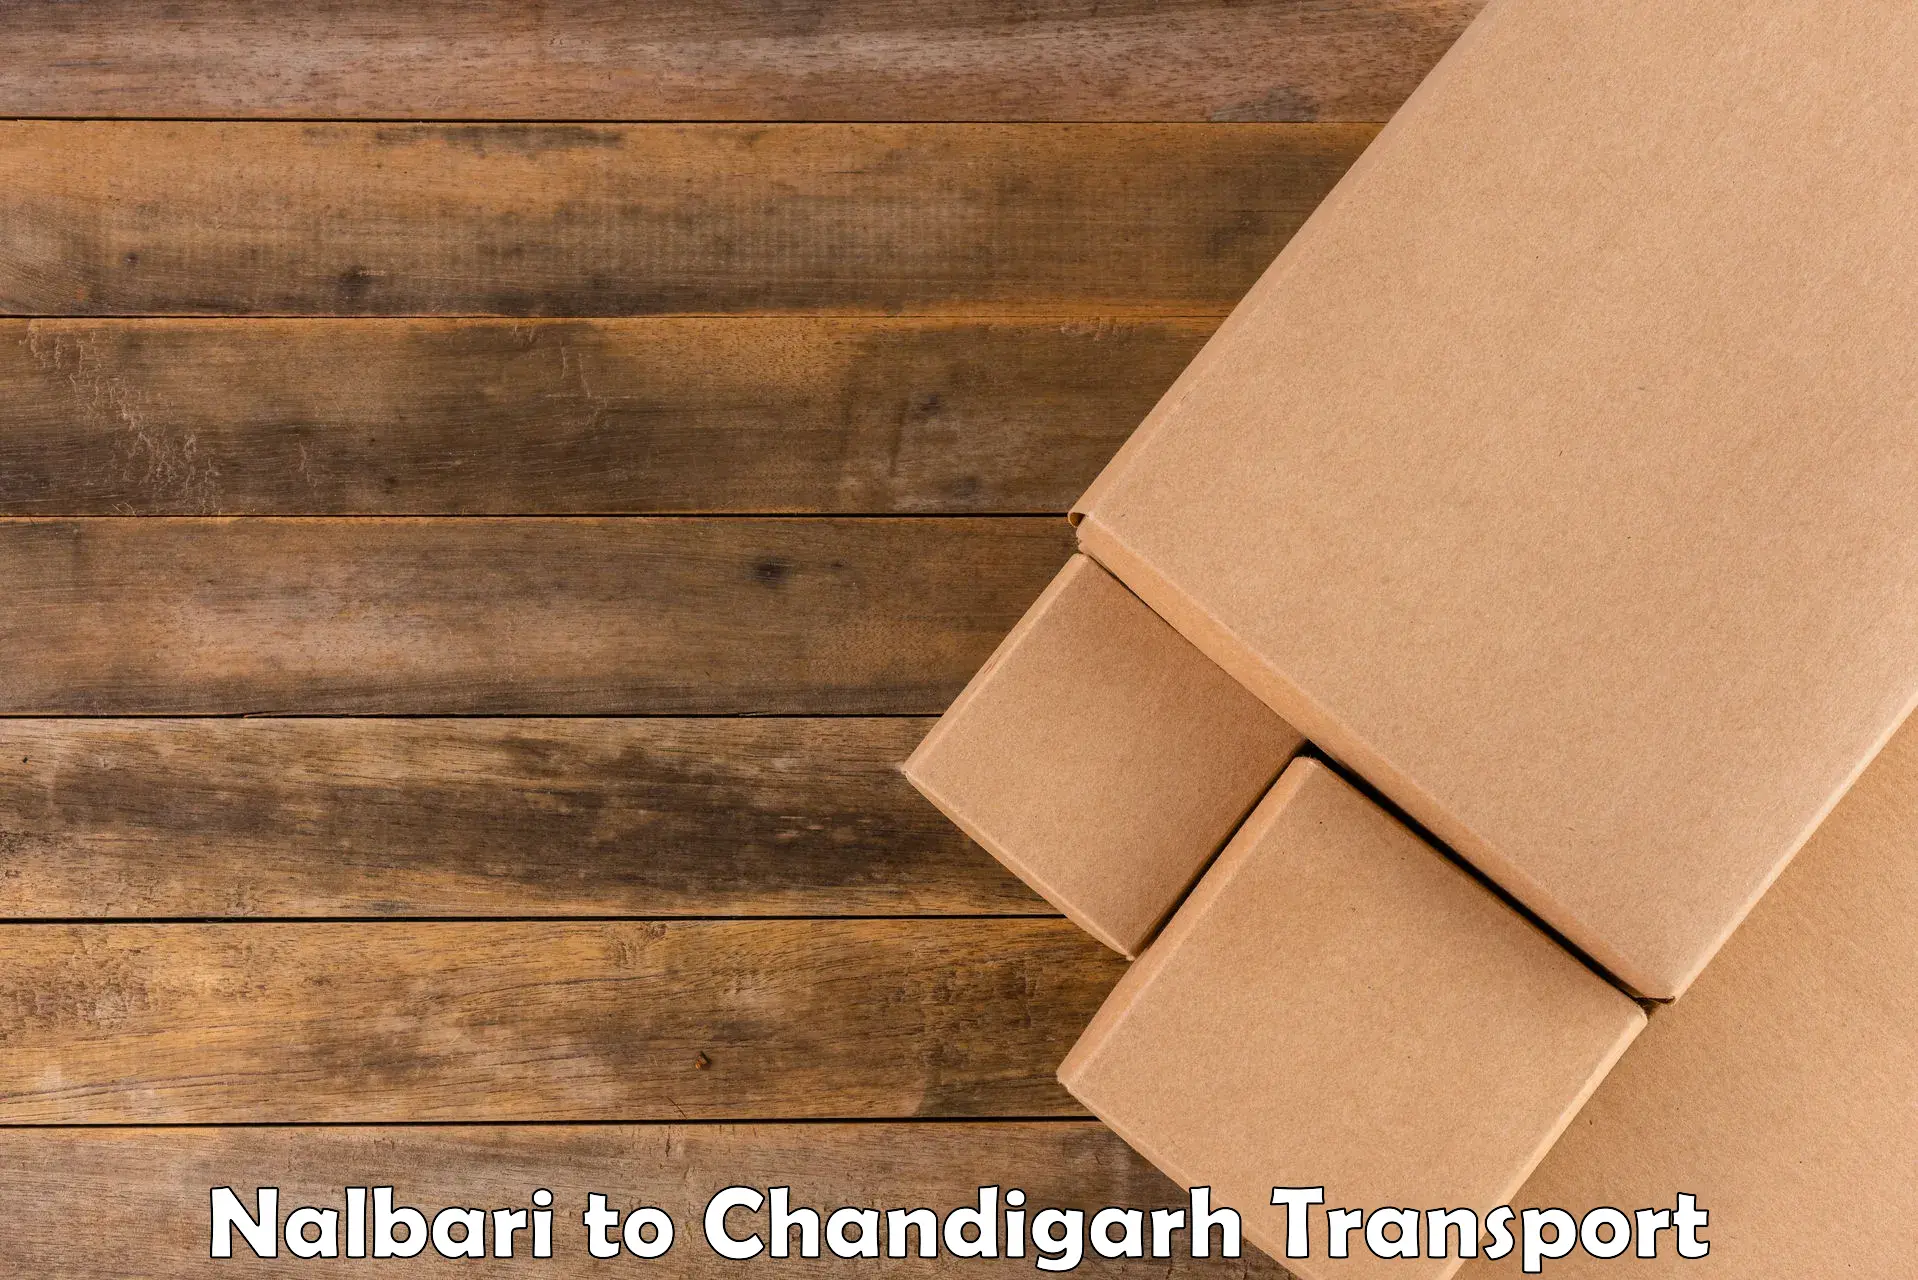 Nearby transport service Nalbari to Chandigarh